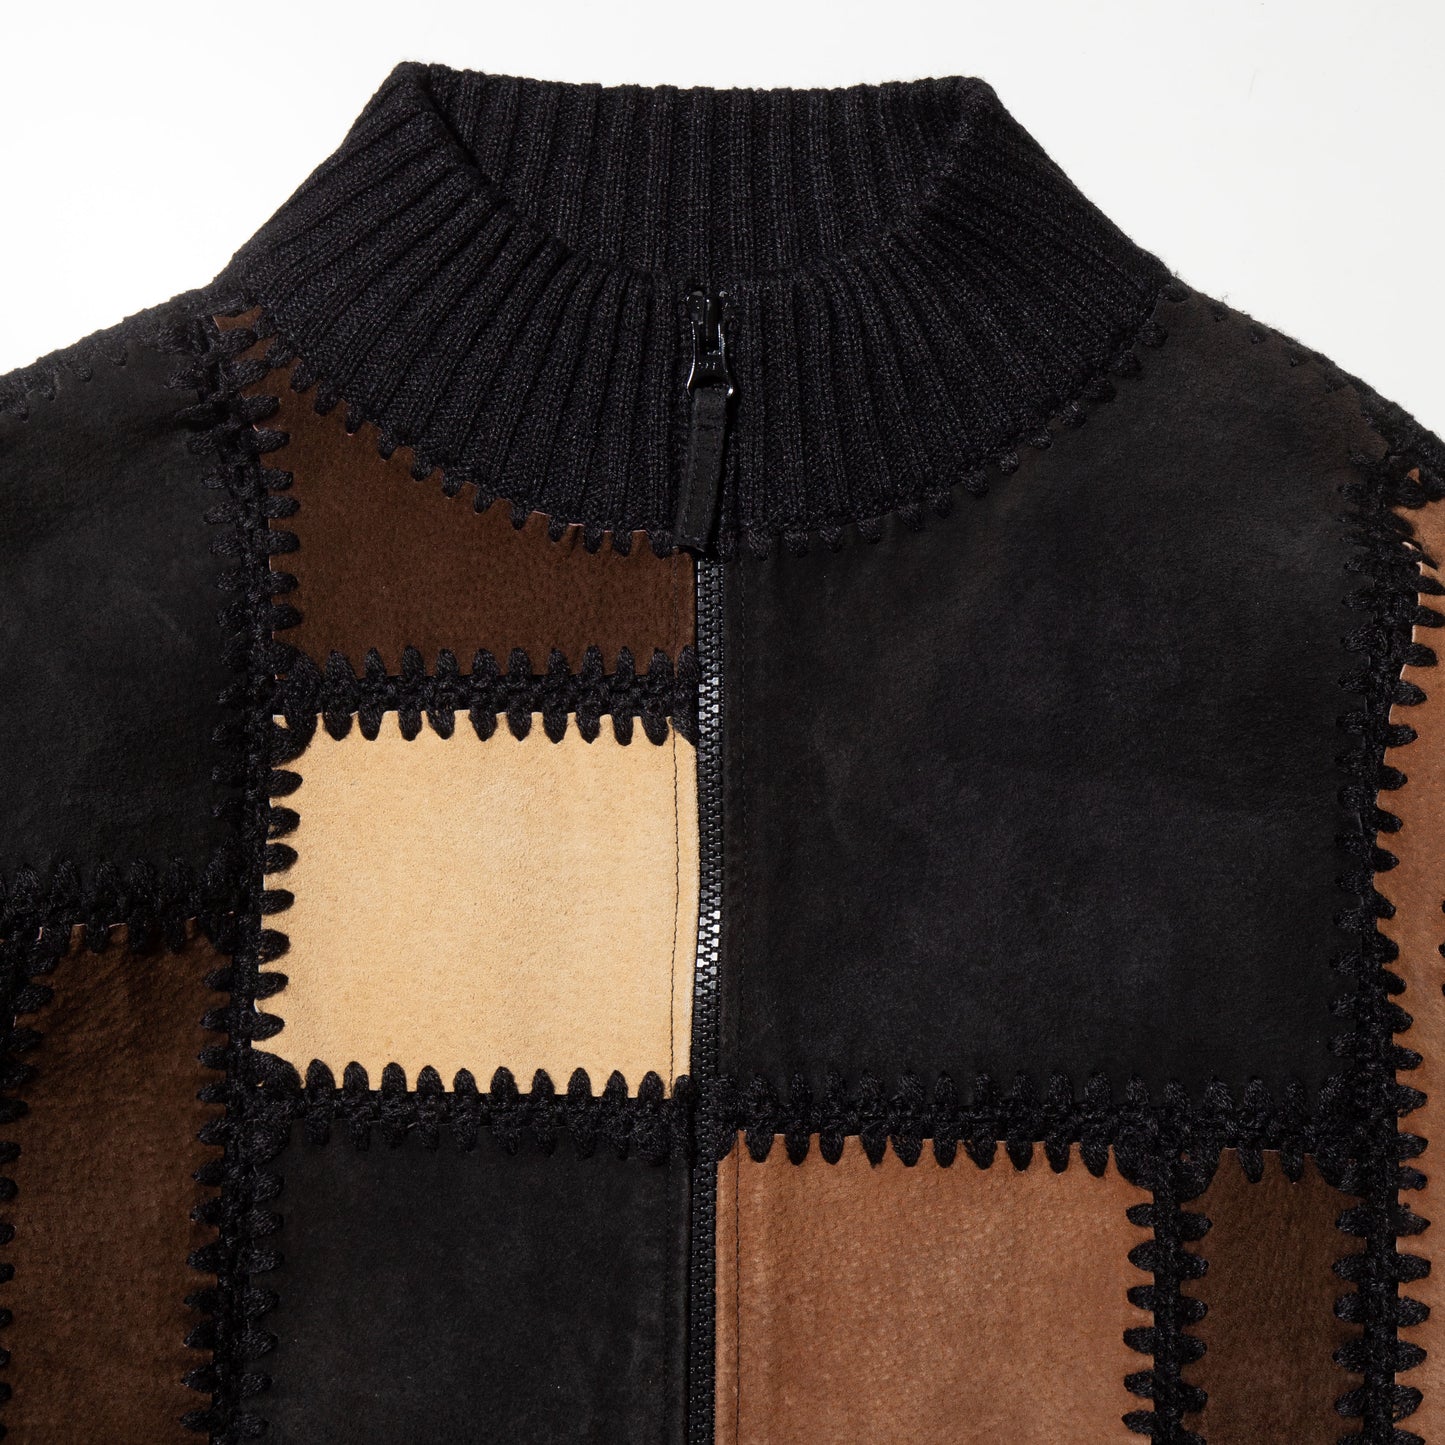 vintage patchwork suede knit jacket